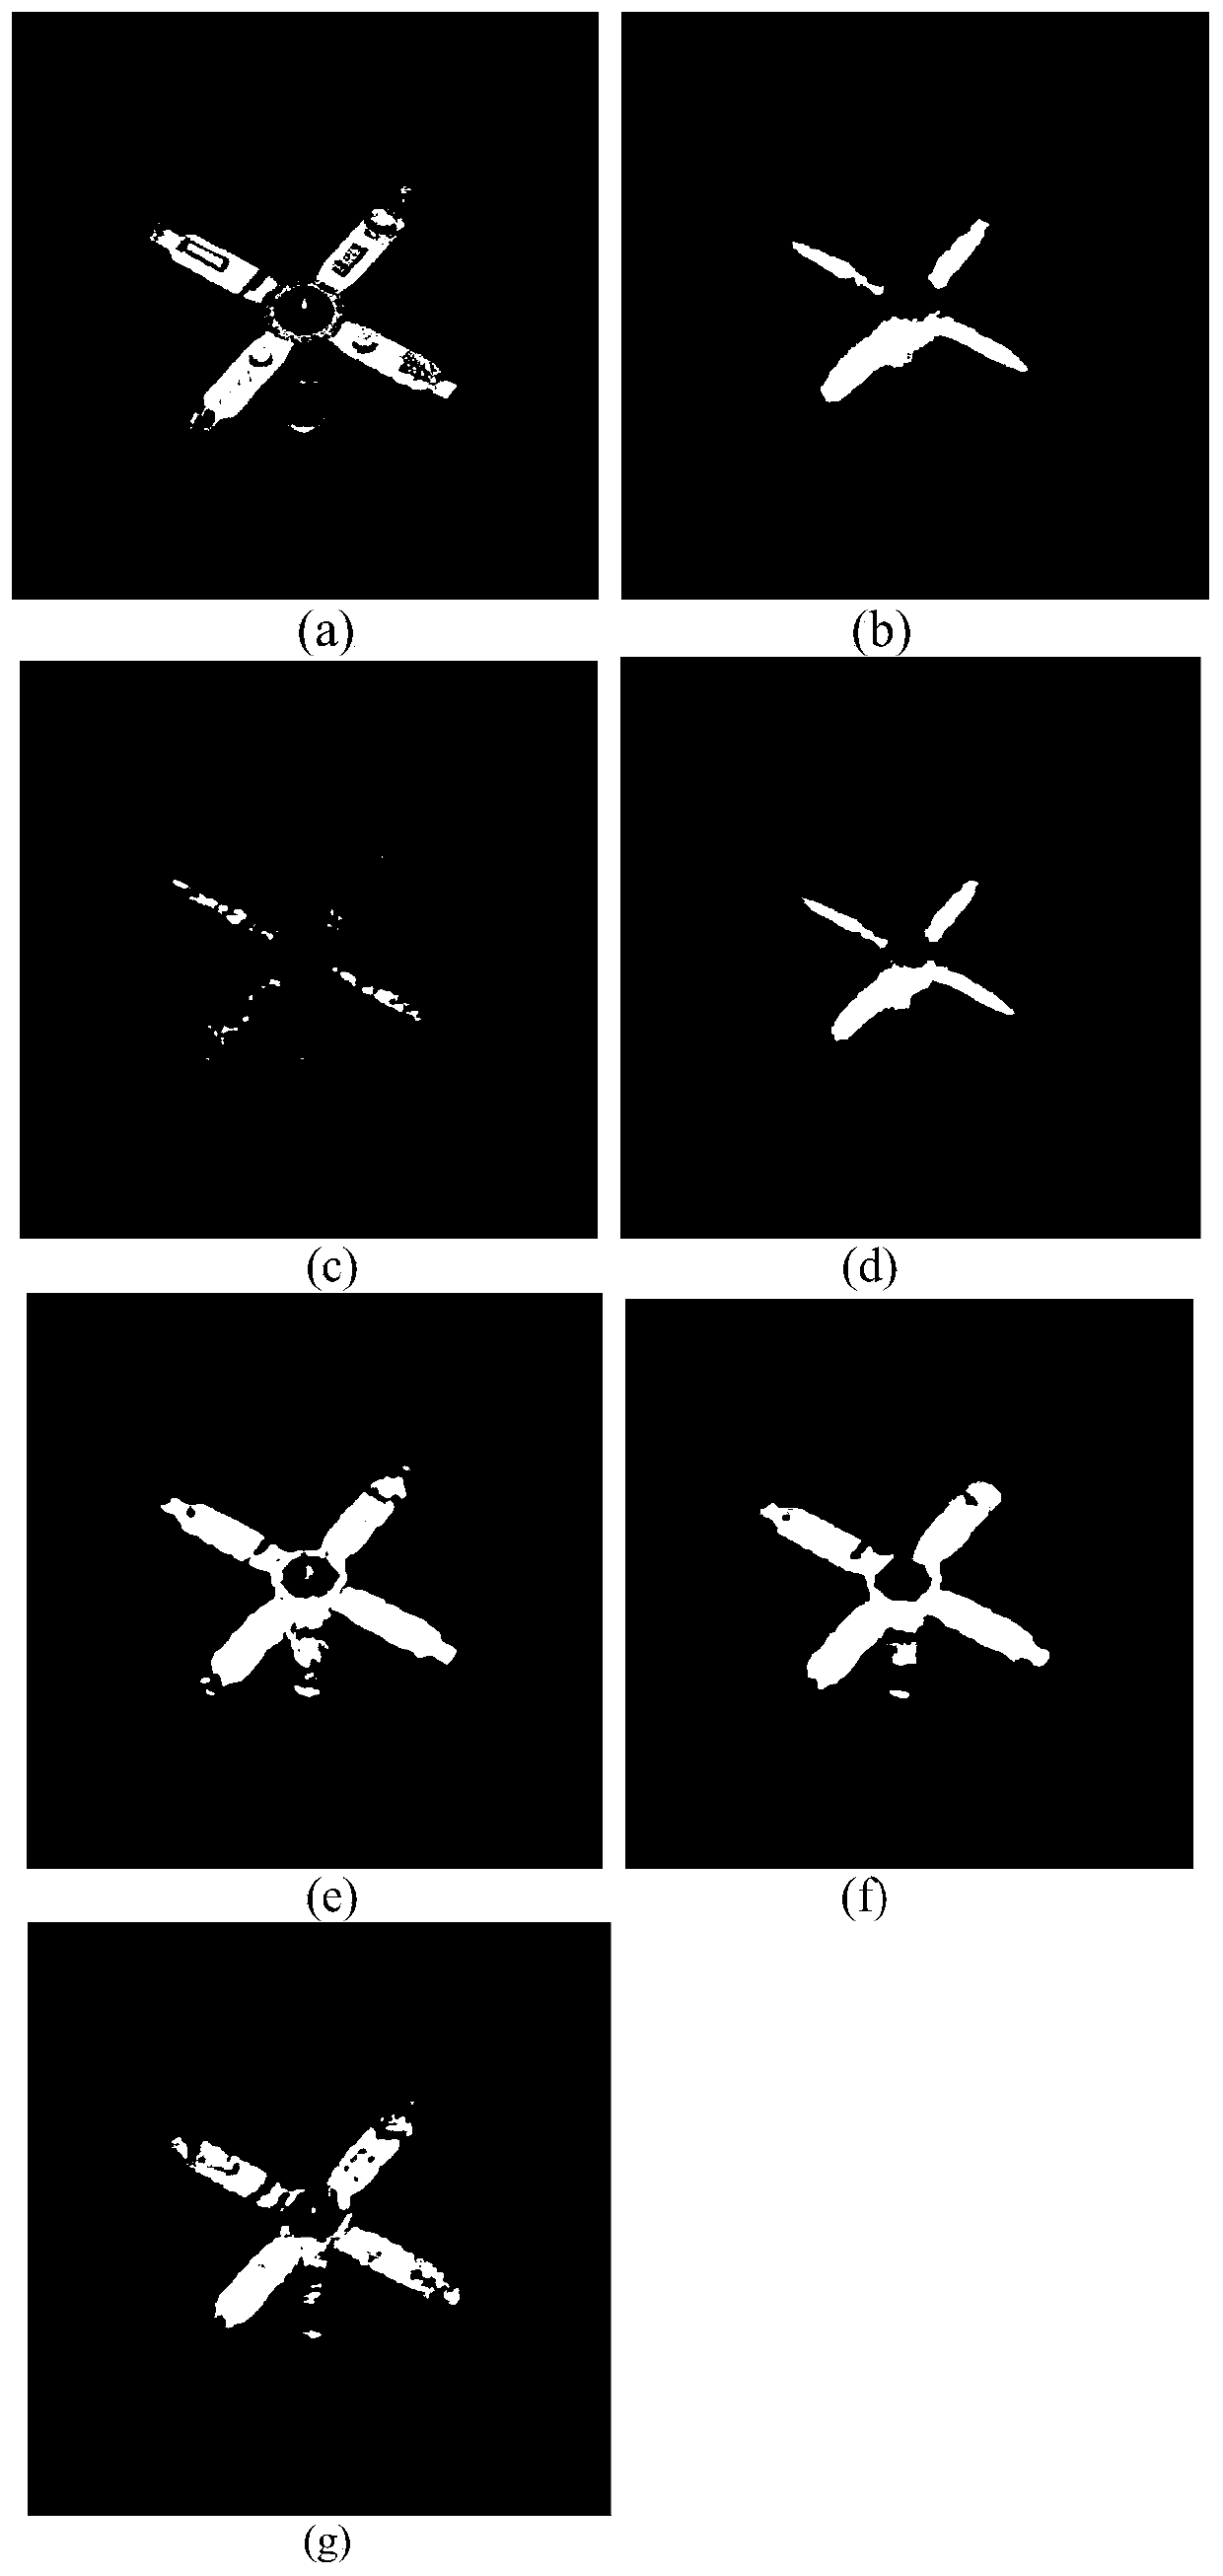 Blind Restoration Method of Turbulent Flow Image Based on Dark Channel Color and Alternating Direction Multiplier Method Optimization